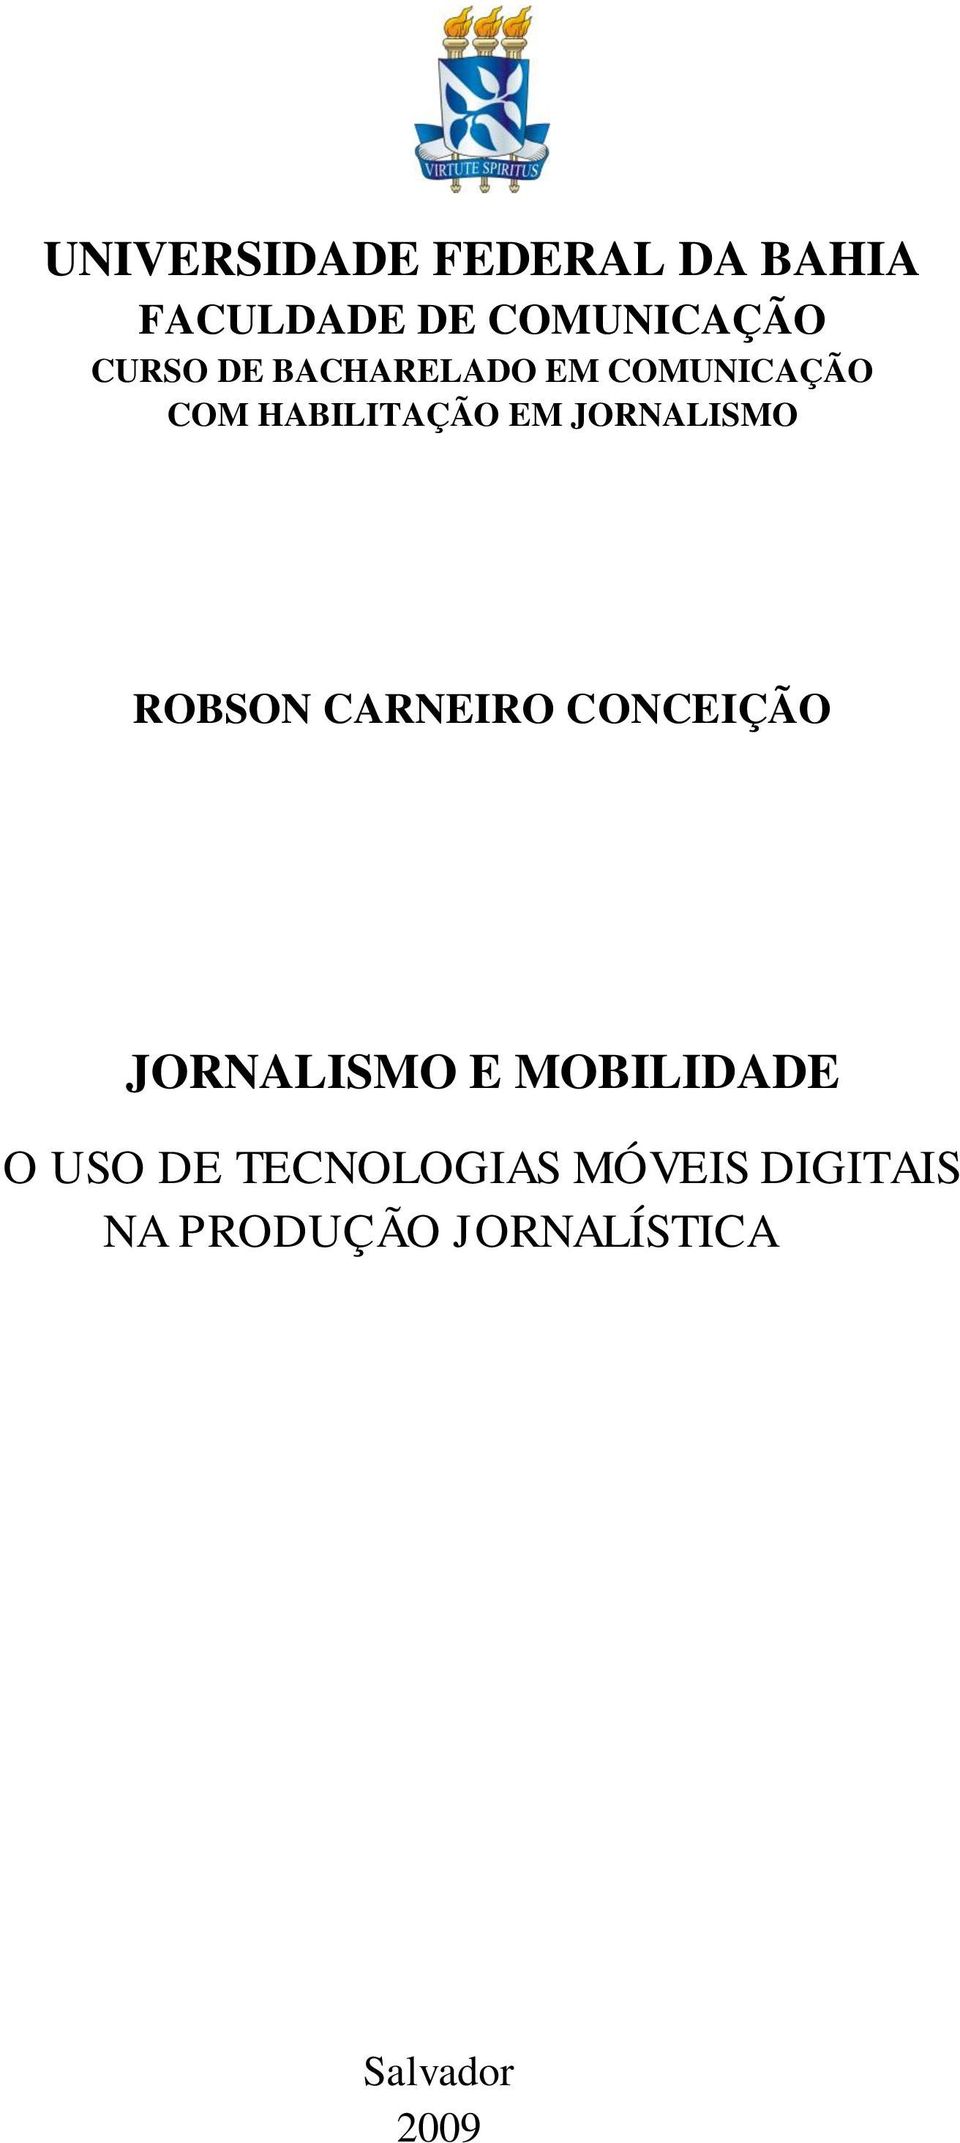 ROBSON CARNEIRO CONCEIÇÃO JORNALISMO E MOBILIDADE O USO DE